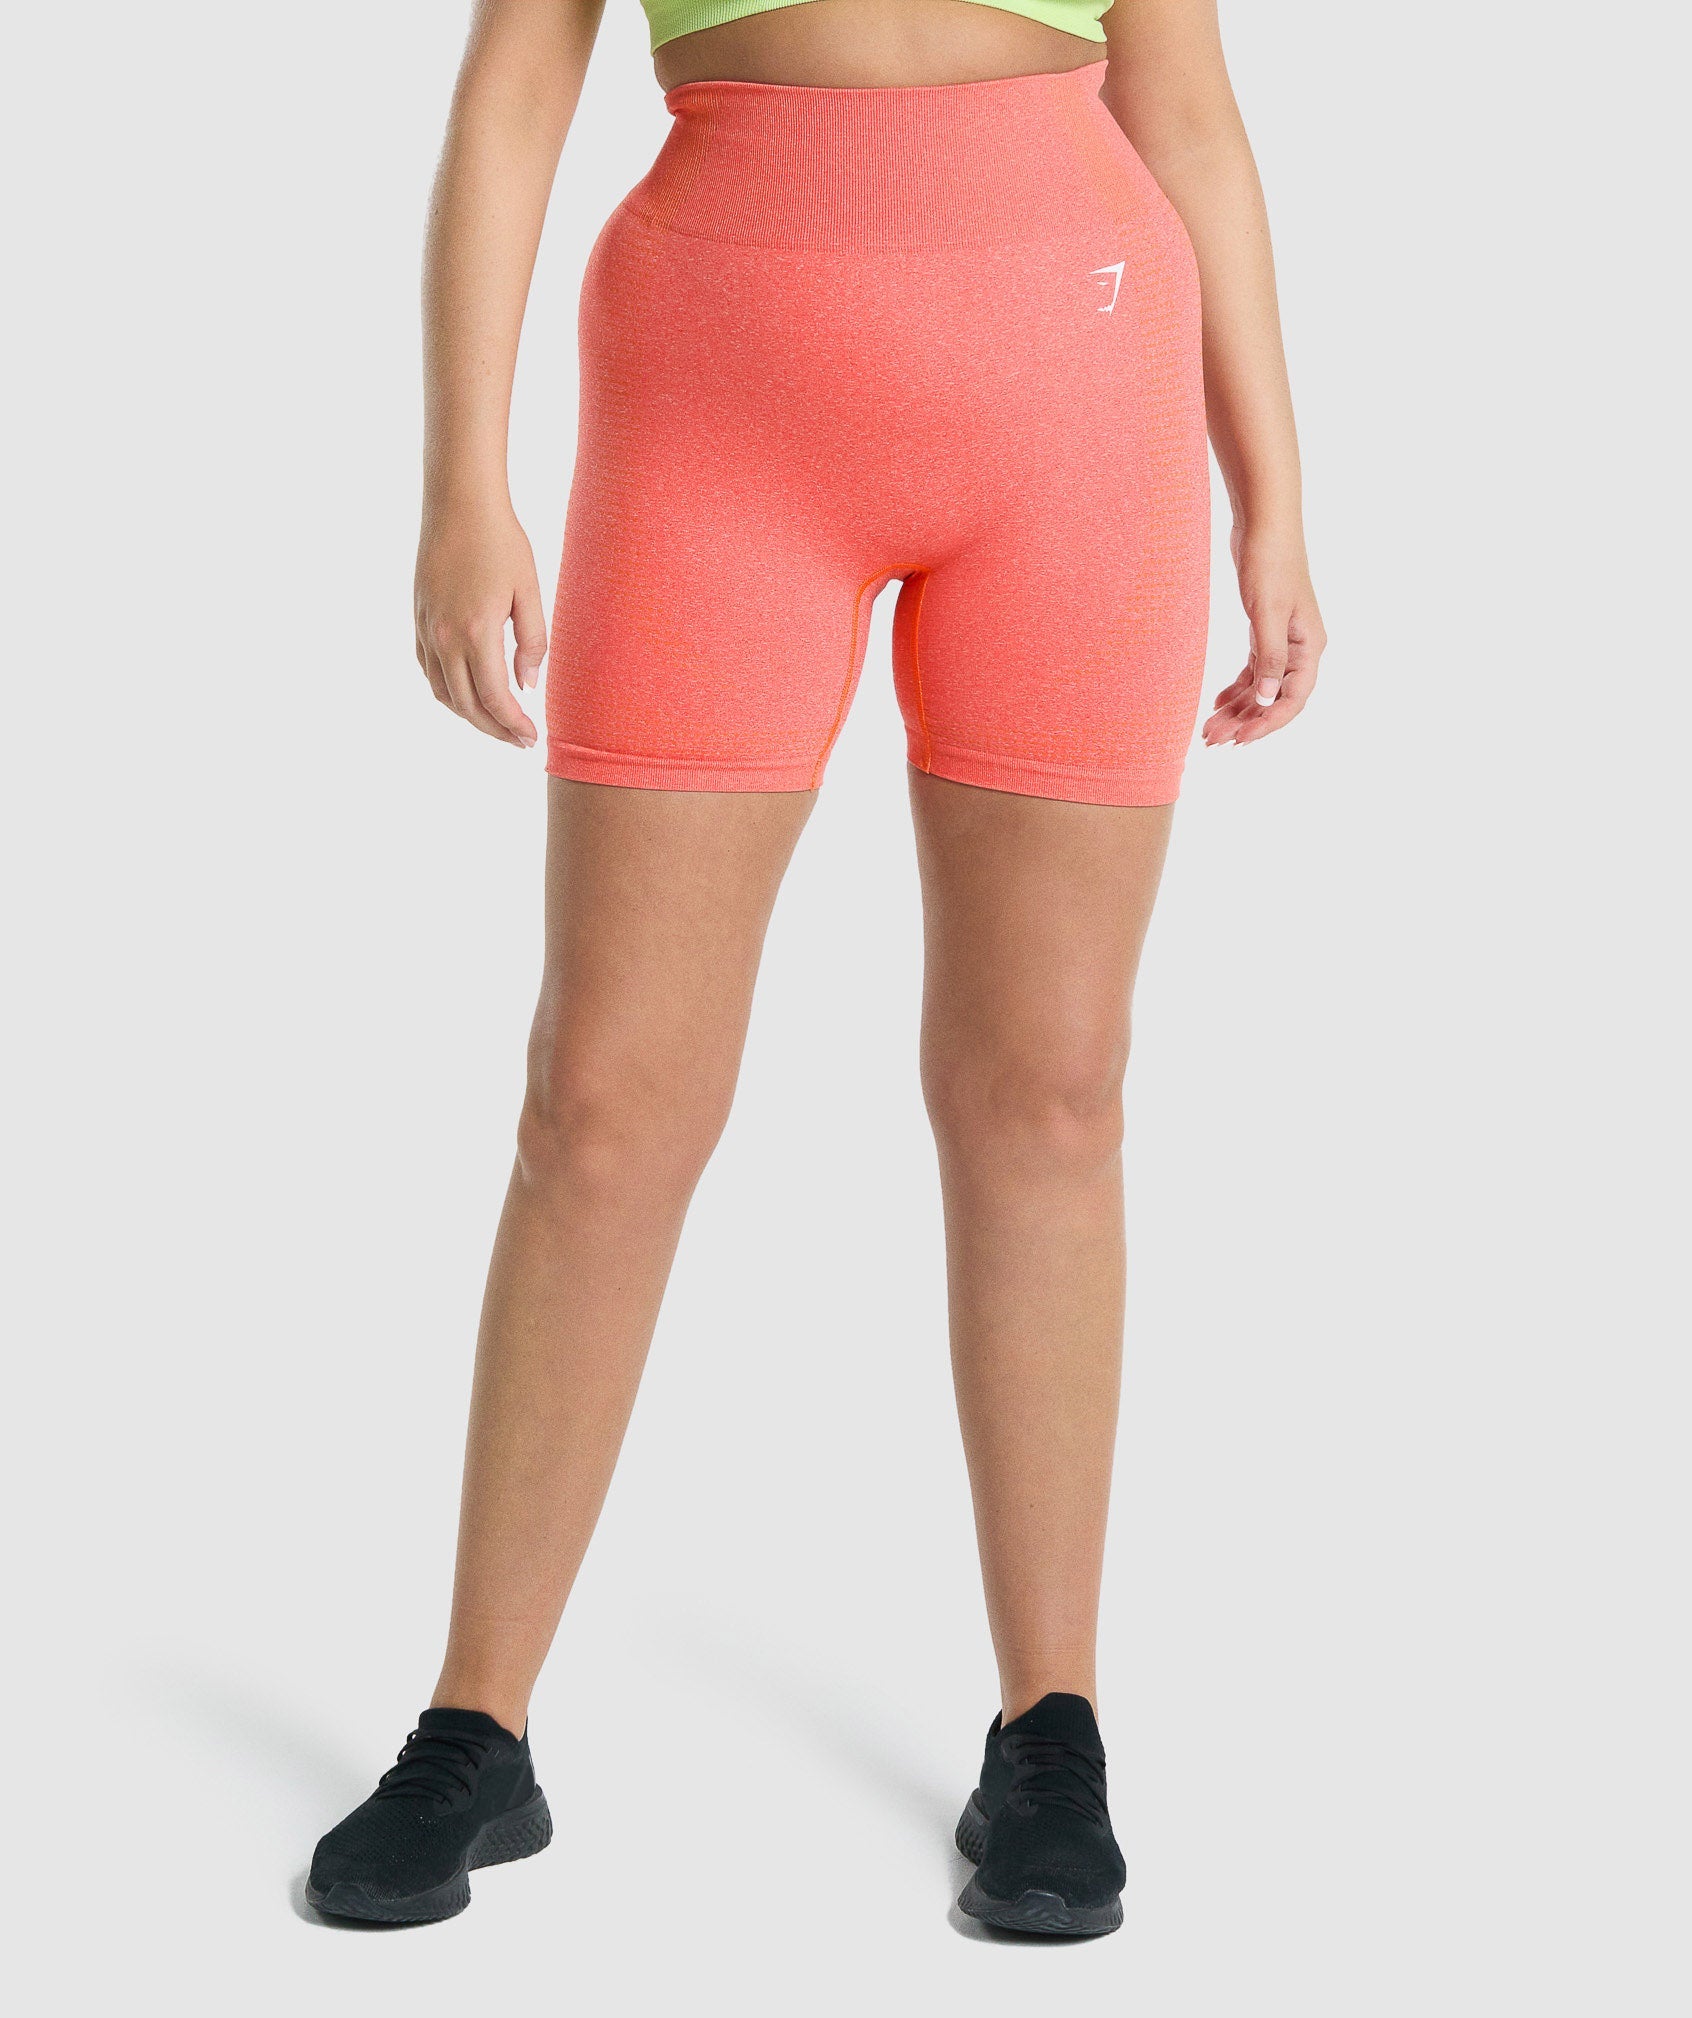 Vital seamless leggings 2.0 shorts – Chesk Offf